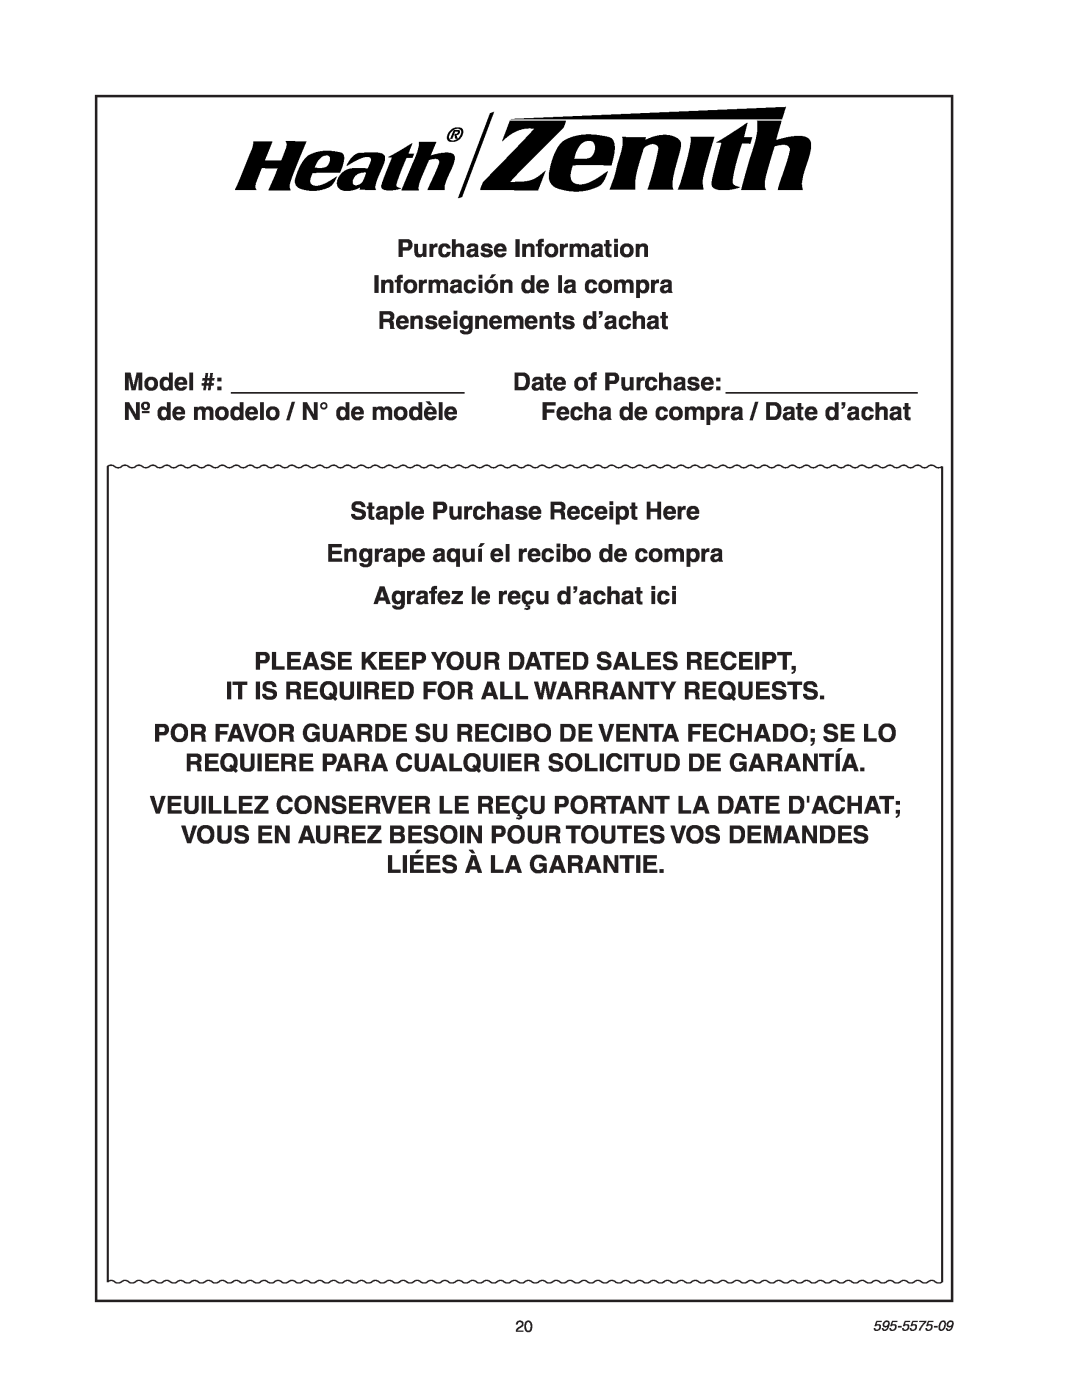 Heath Zenith SL-5512 manual Purchase Information Información de la compra 